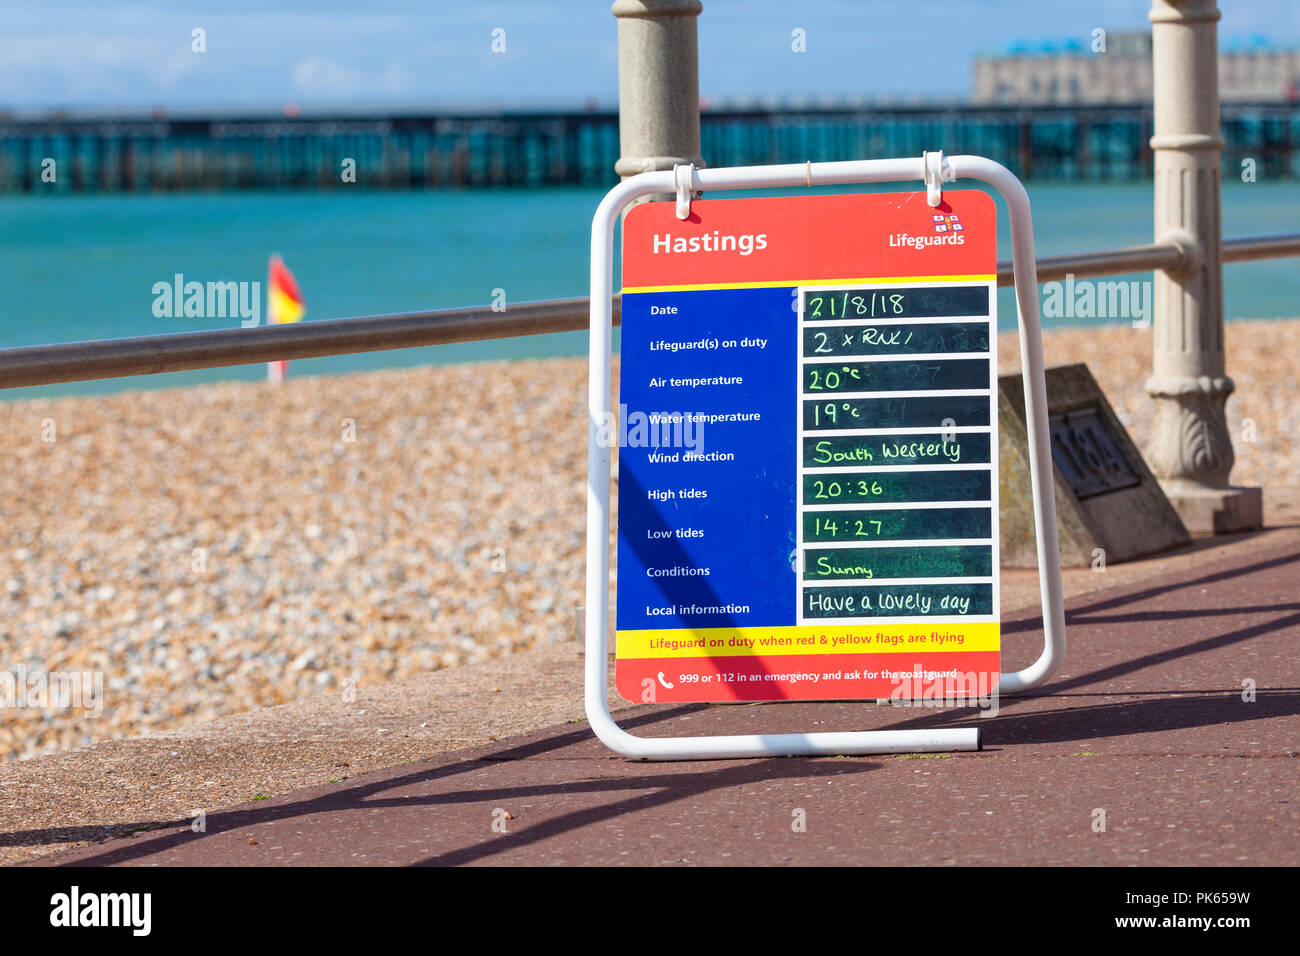 Lifeguard tableau météo, météo locales connexes informations sur un conseil sur la promenade de Hastings, Royaume-Uni Banque D'Images